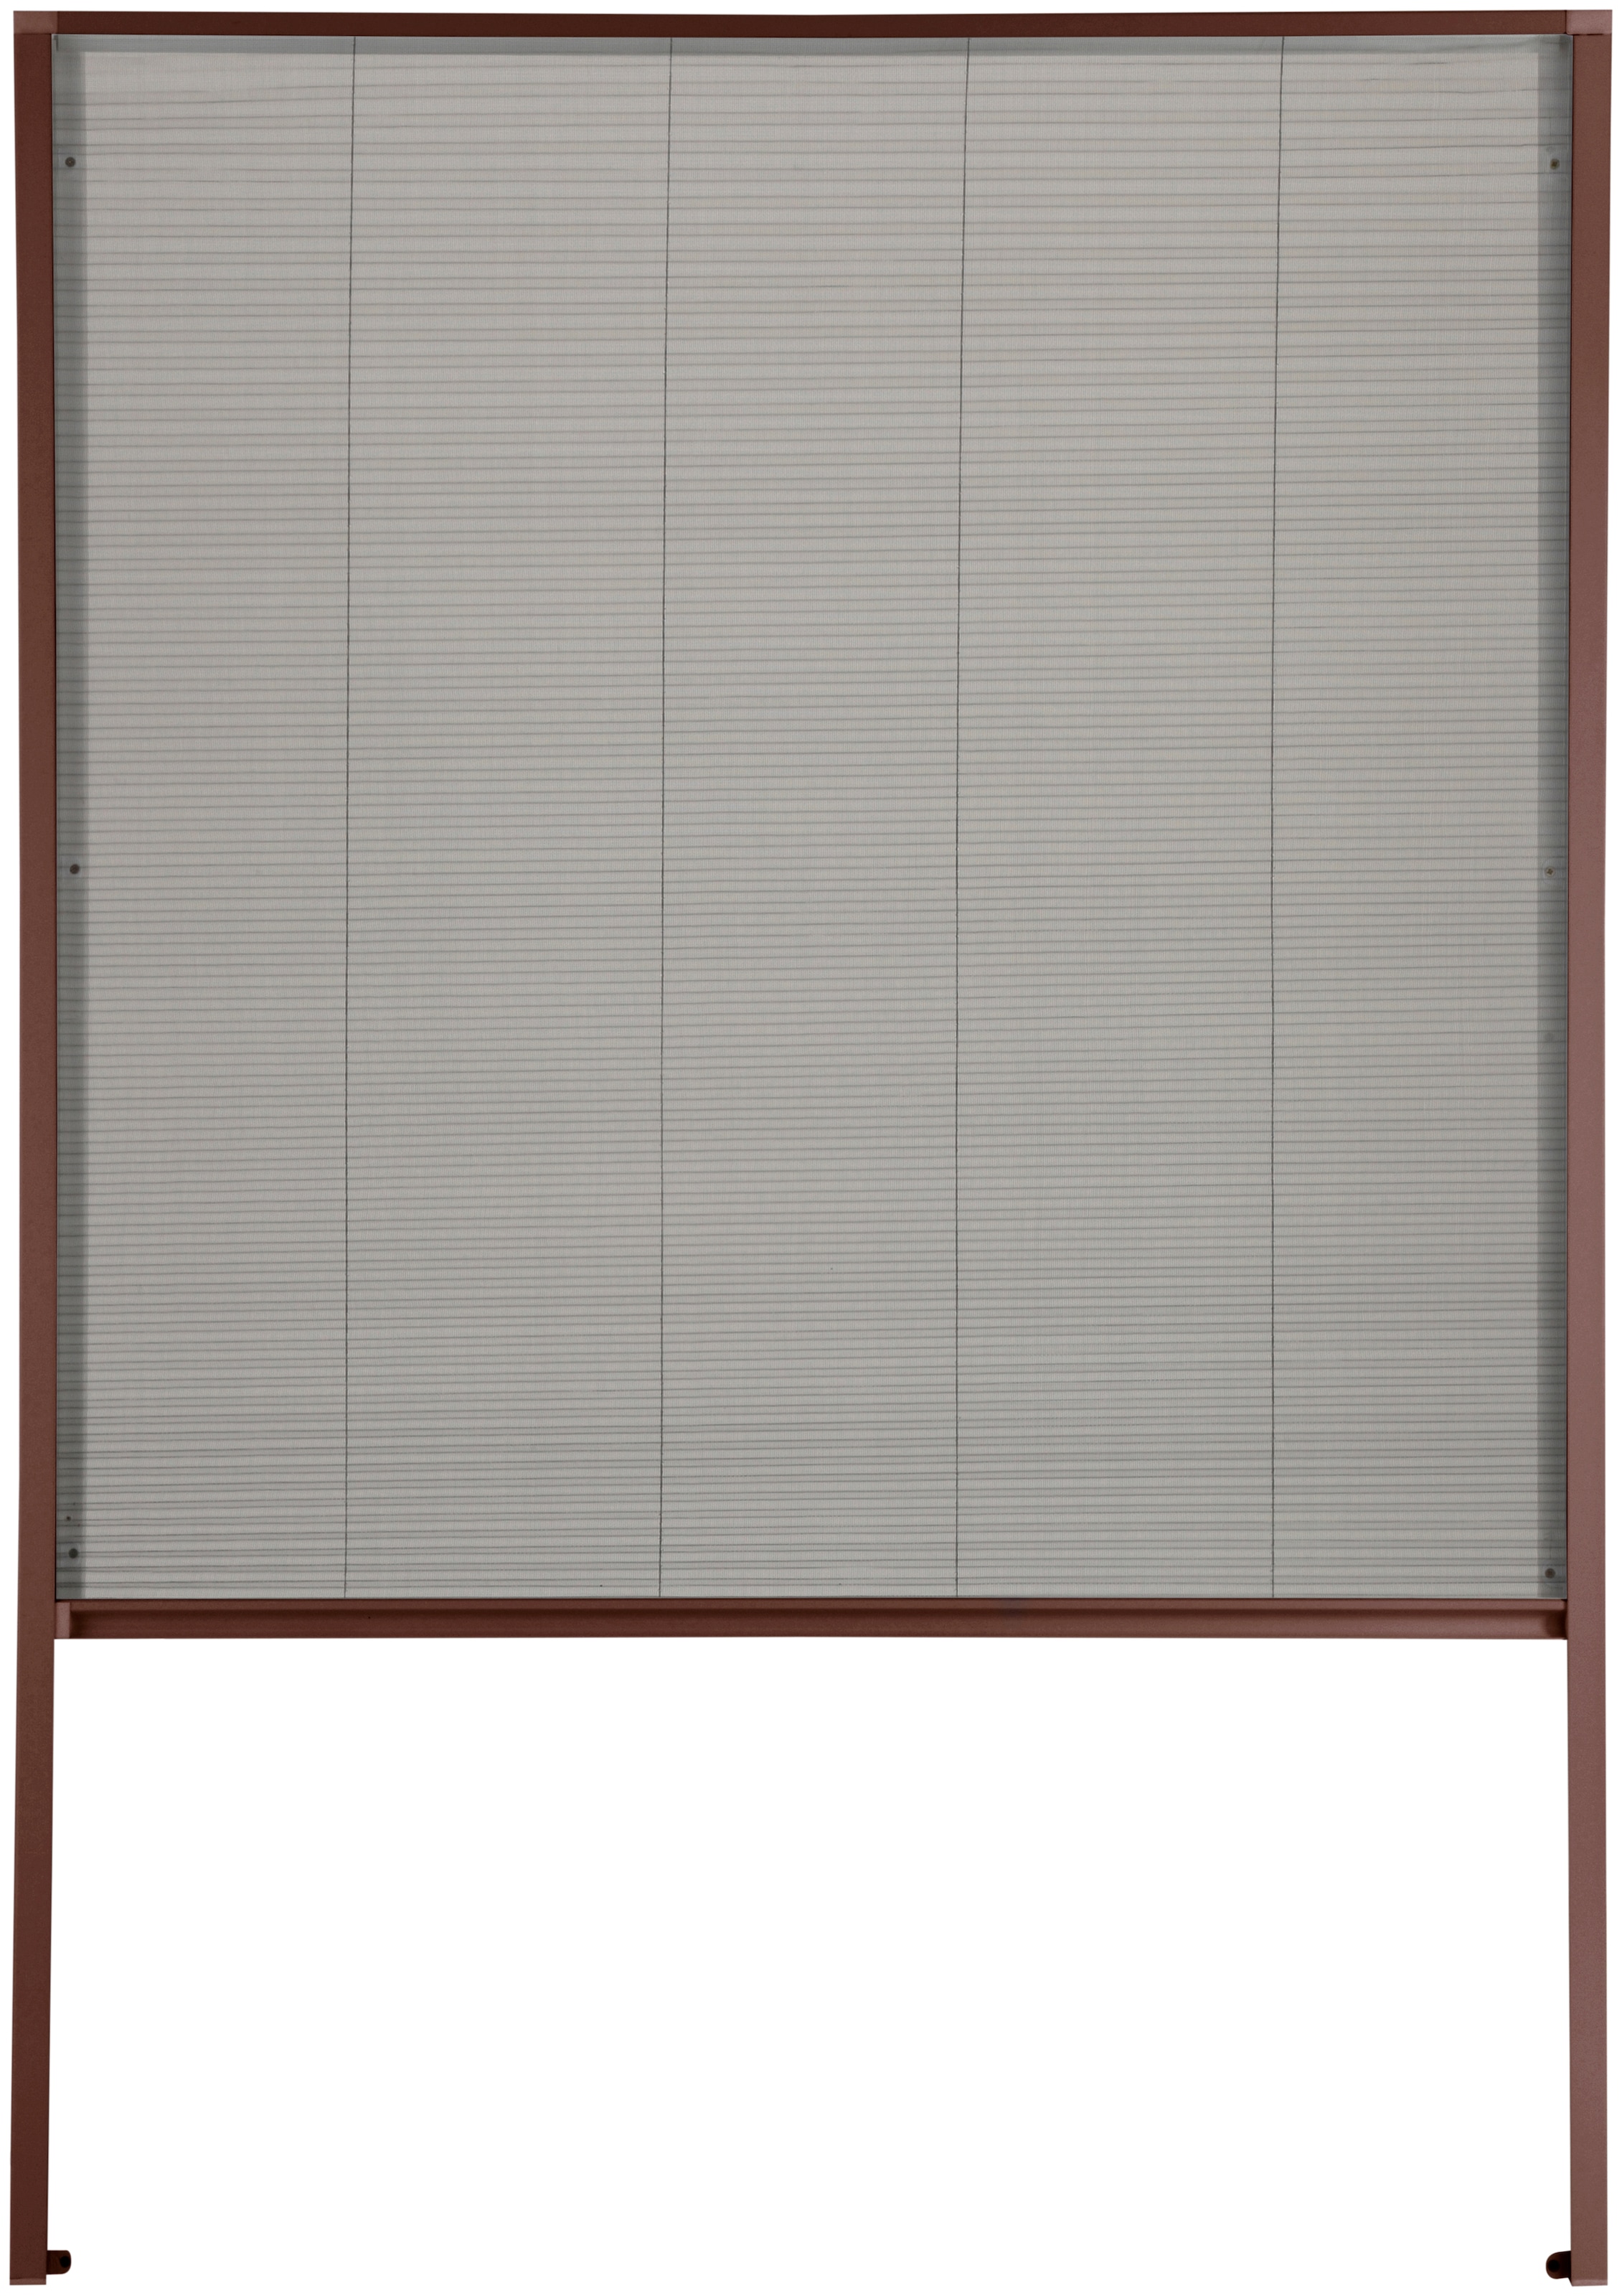 Insektenschutzrollo »für Dachfenster«, transparent, braun/anthrazit, BxH: 110x160 cm